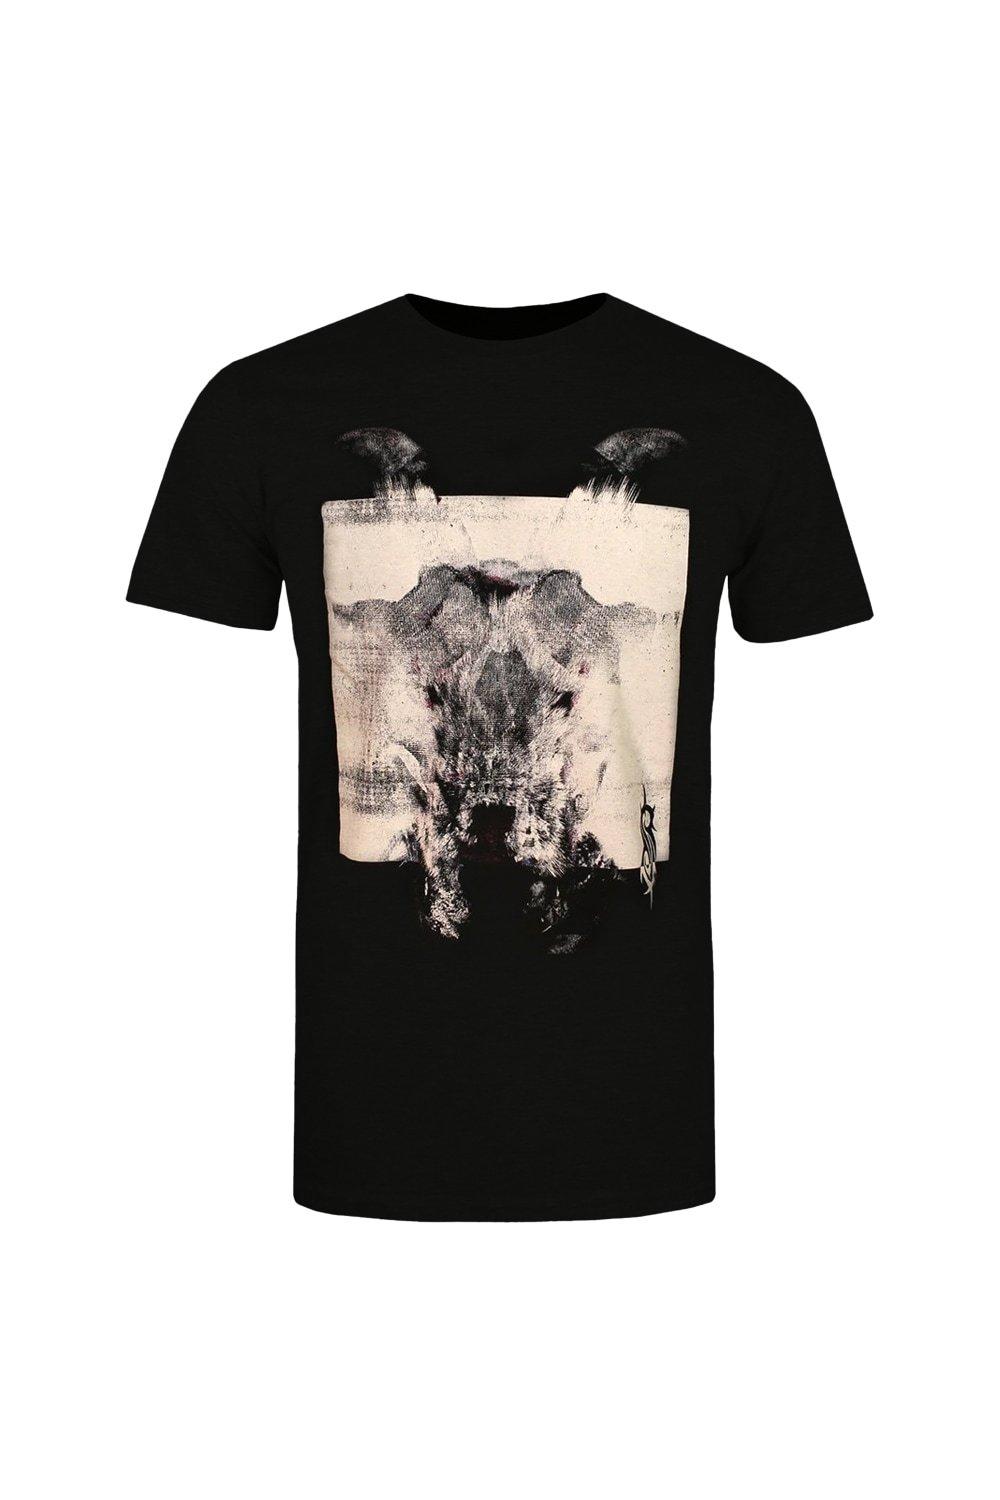 T-Shirts | Devil Single Back Print T-Shirt | Slipknot